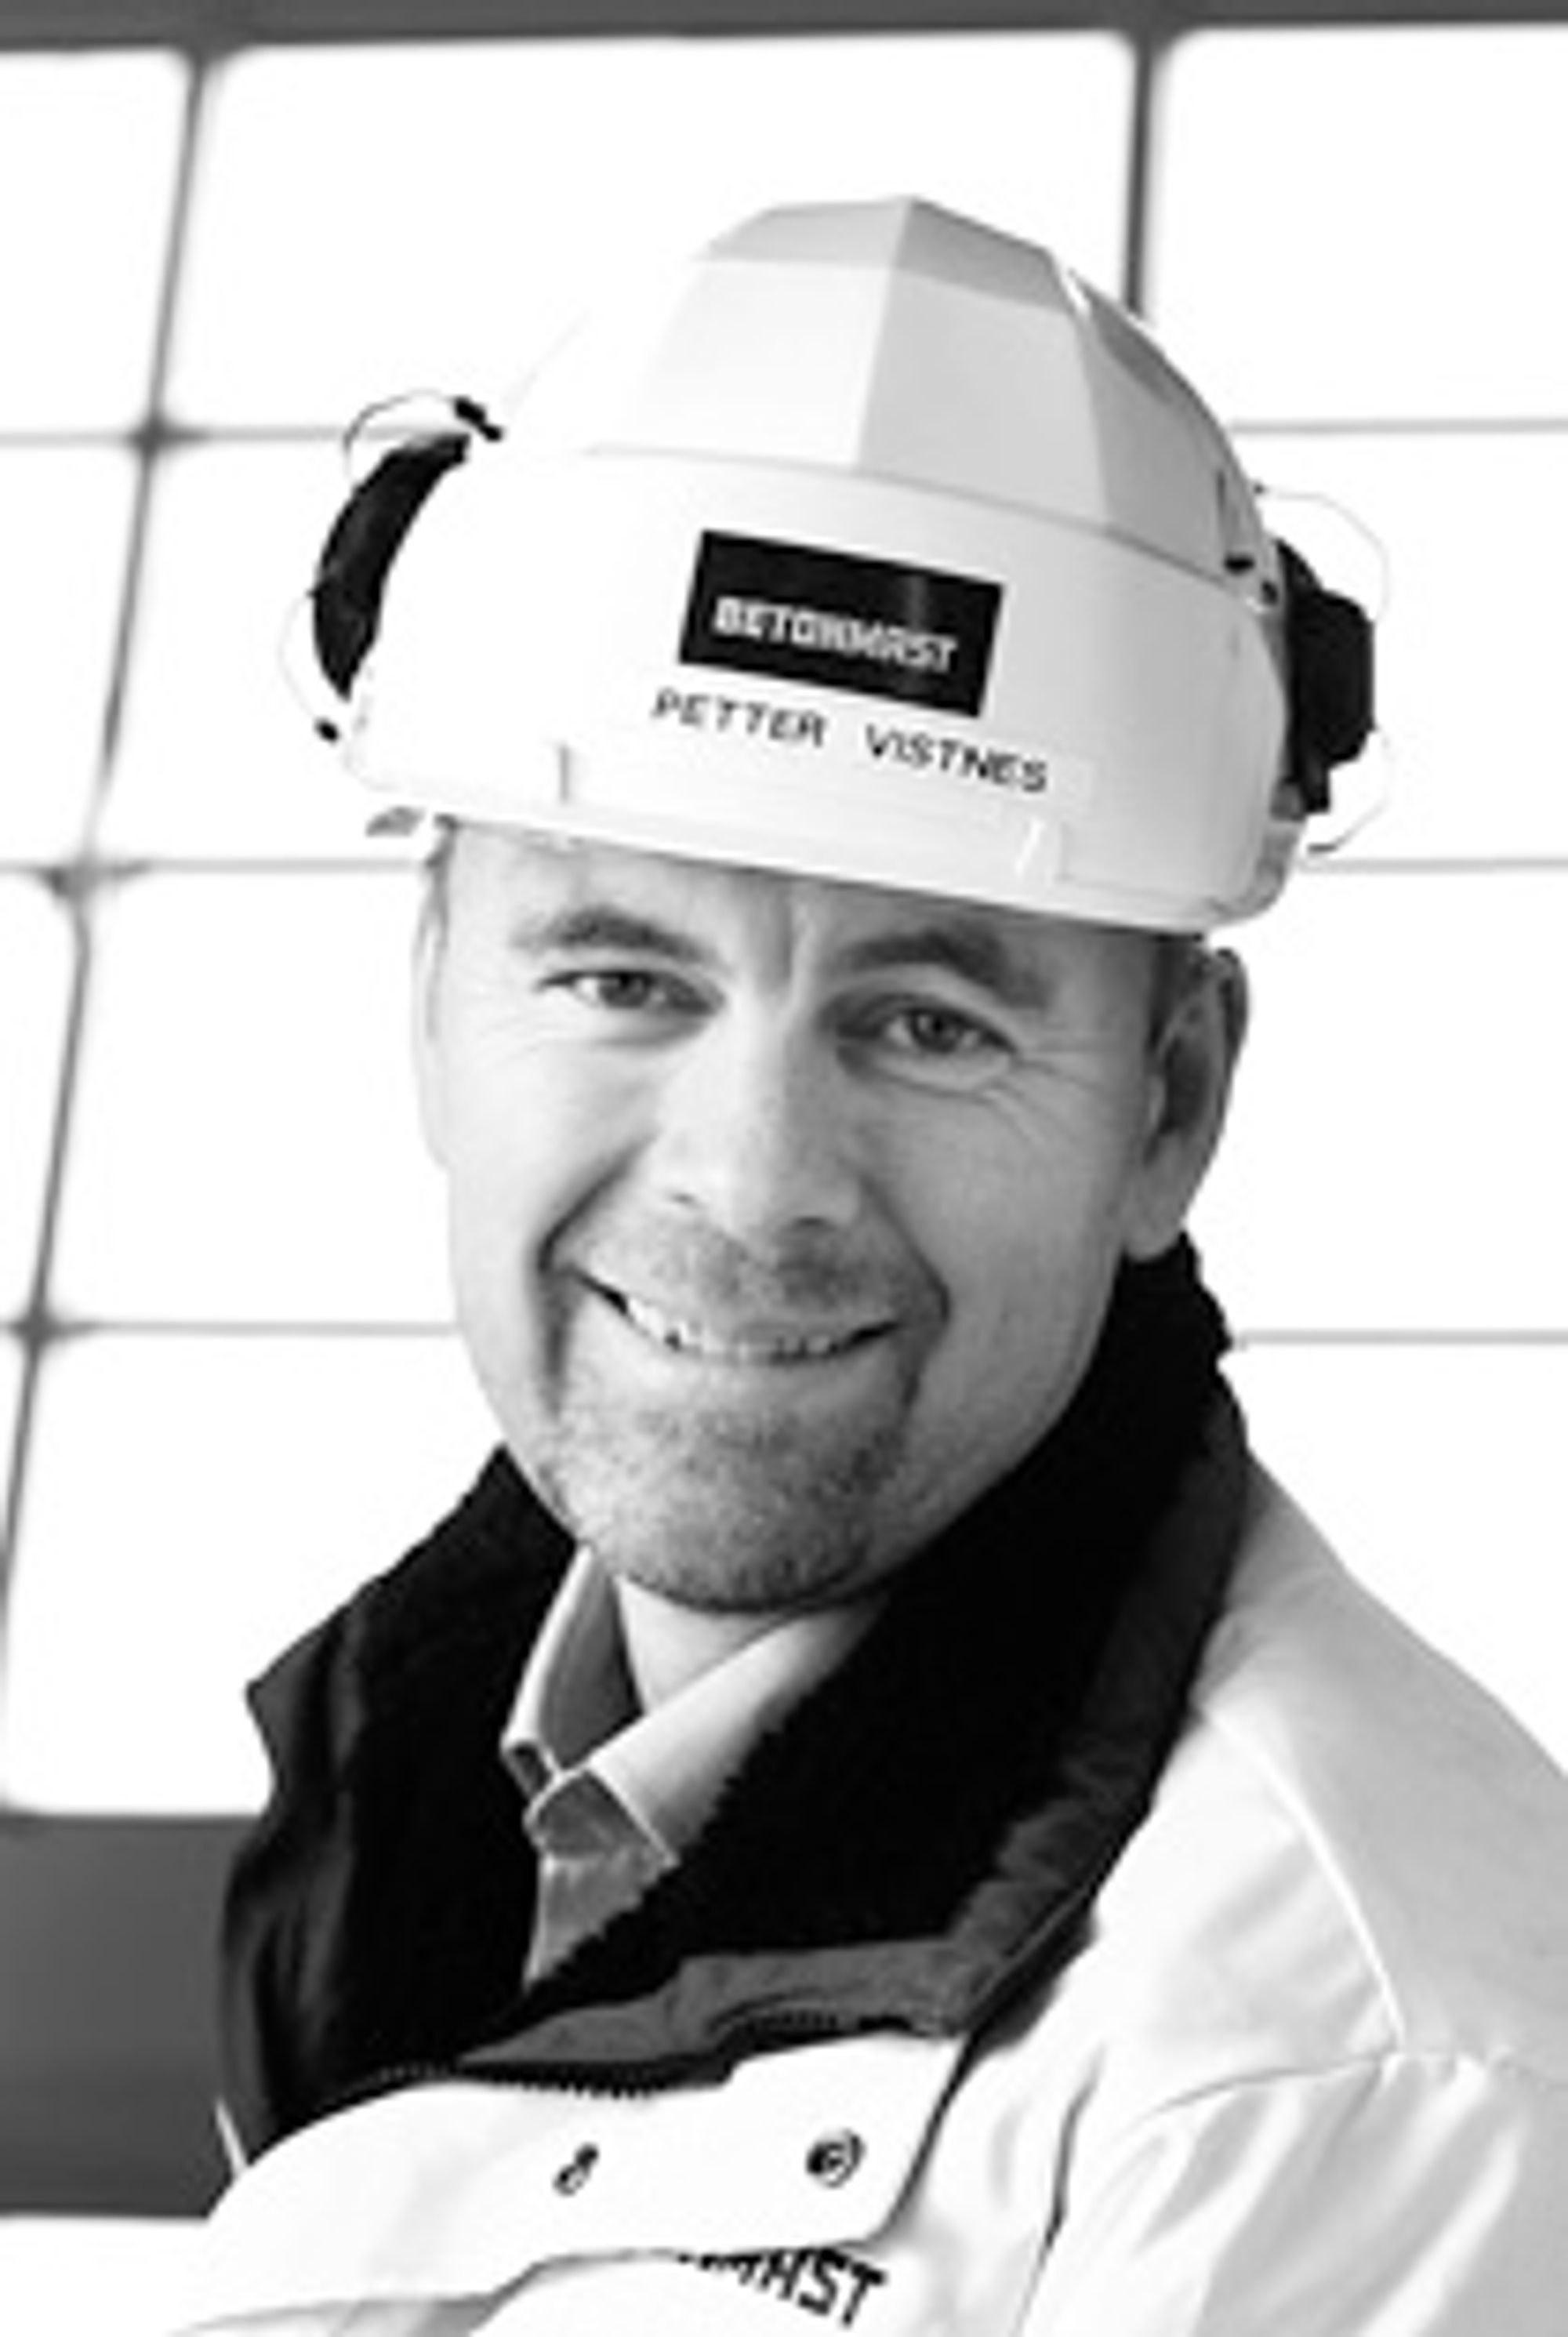 Voldsom vekst OPTIMIST: Betonmast-direktør Petter Vistnes ser frem til å ansette 20 nye medarbeidere i nærmeste fremtid. (FOTO: Betonmast) - petter_presse_210